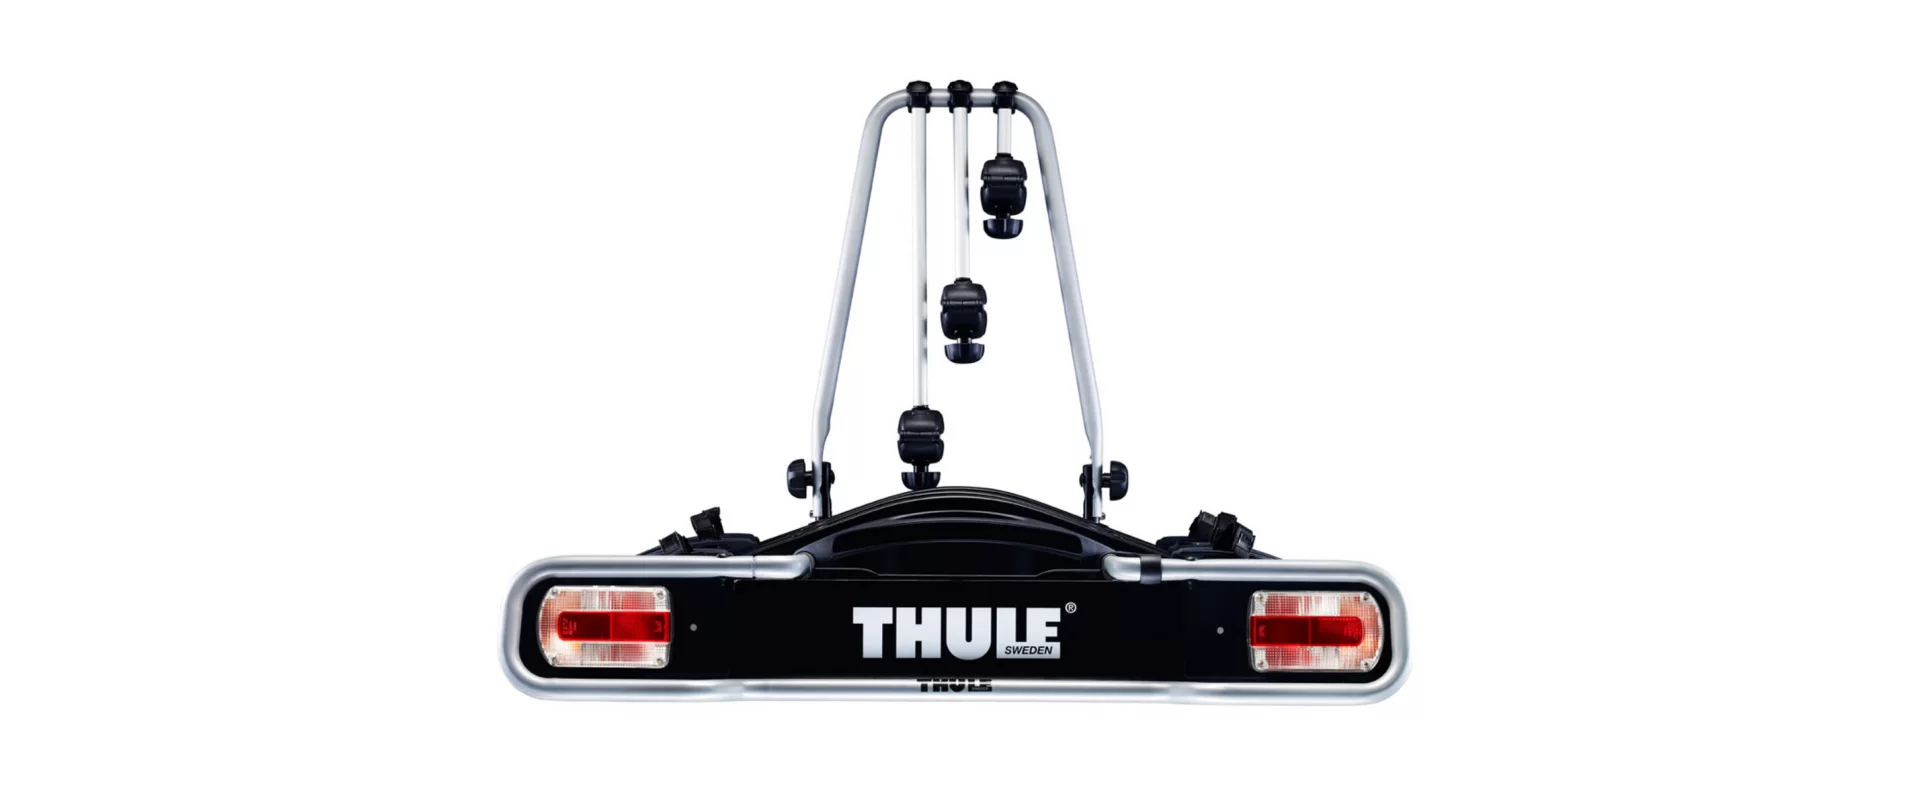 Thule EuroRide 3 7-pin / Платформа на фаркоп для 3-х велосипедов фото 1